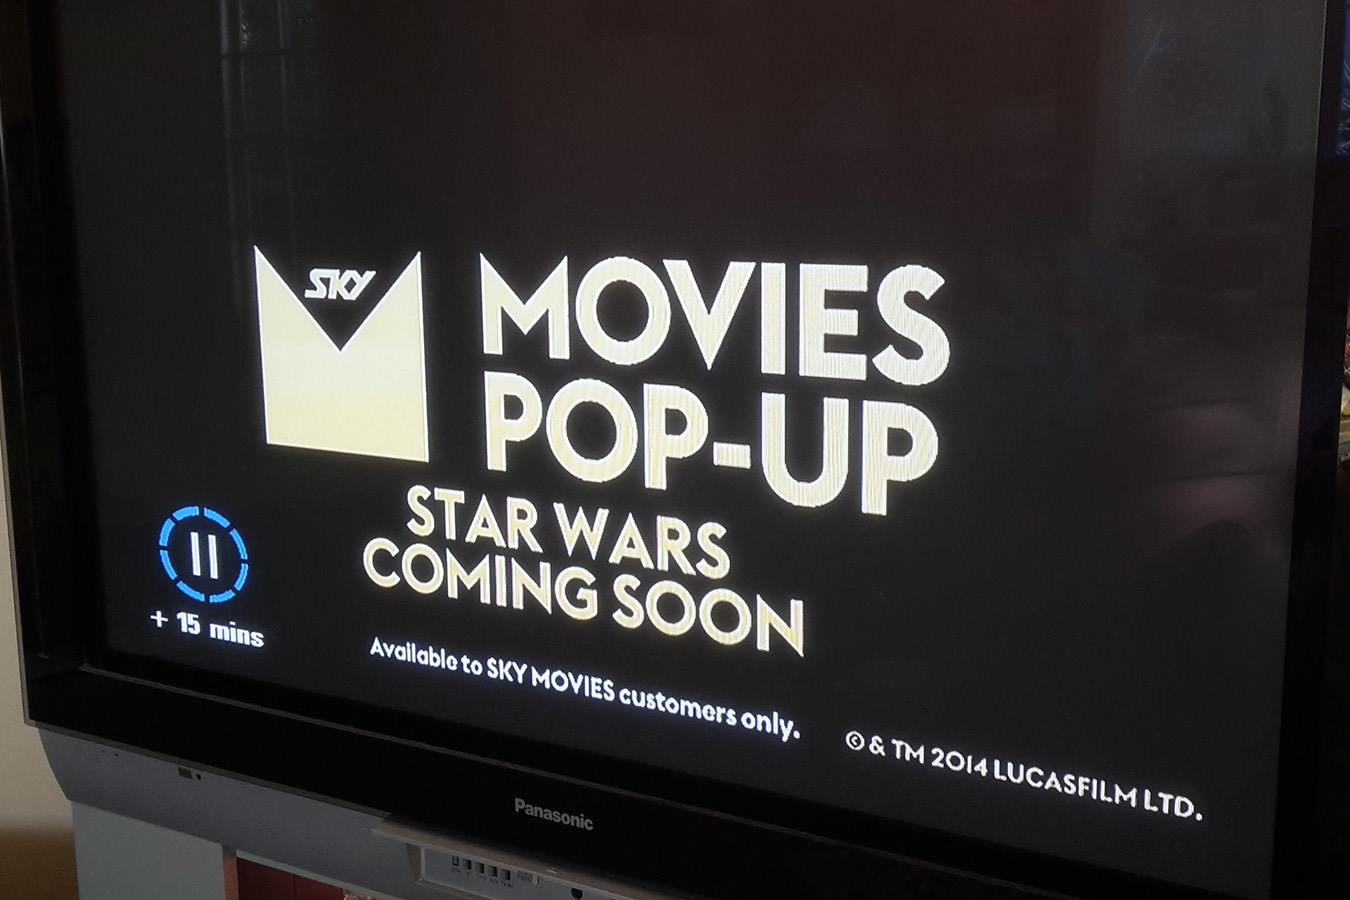 Sky TV - Star Wars pop up channel advert